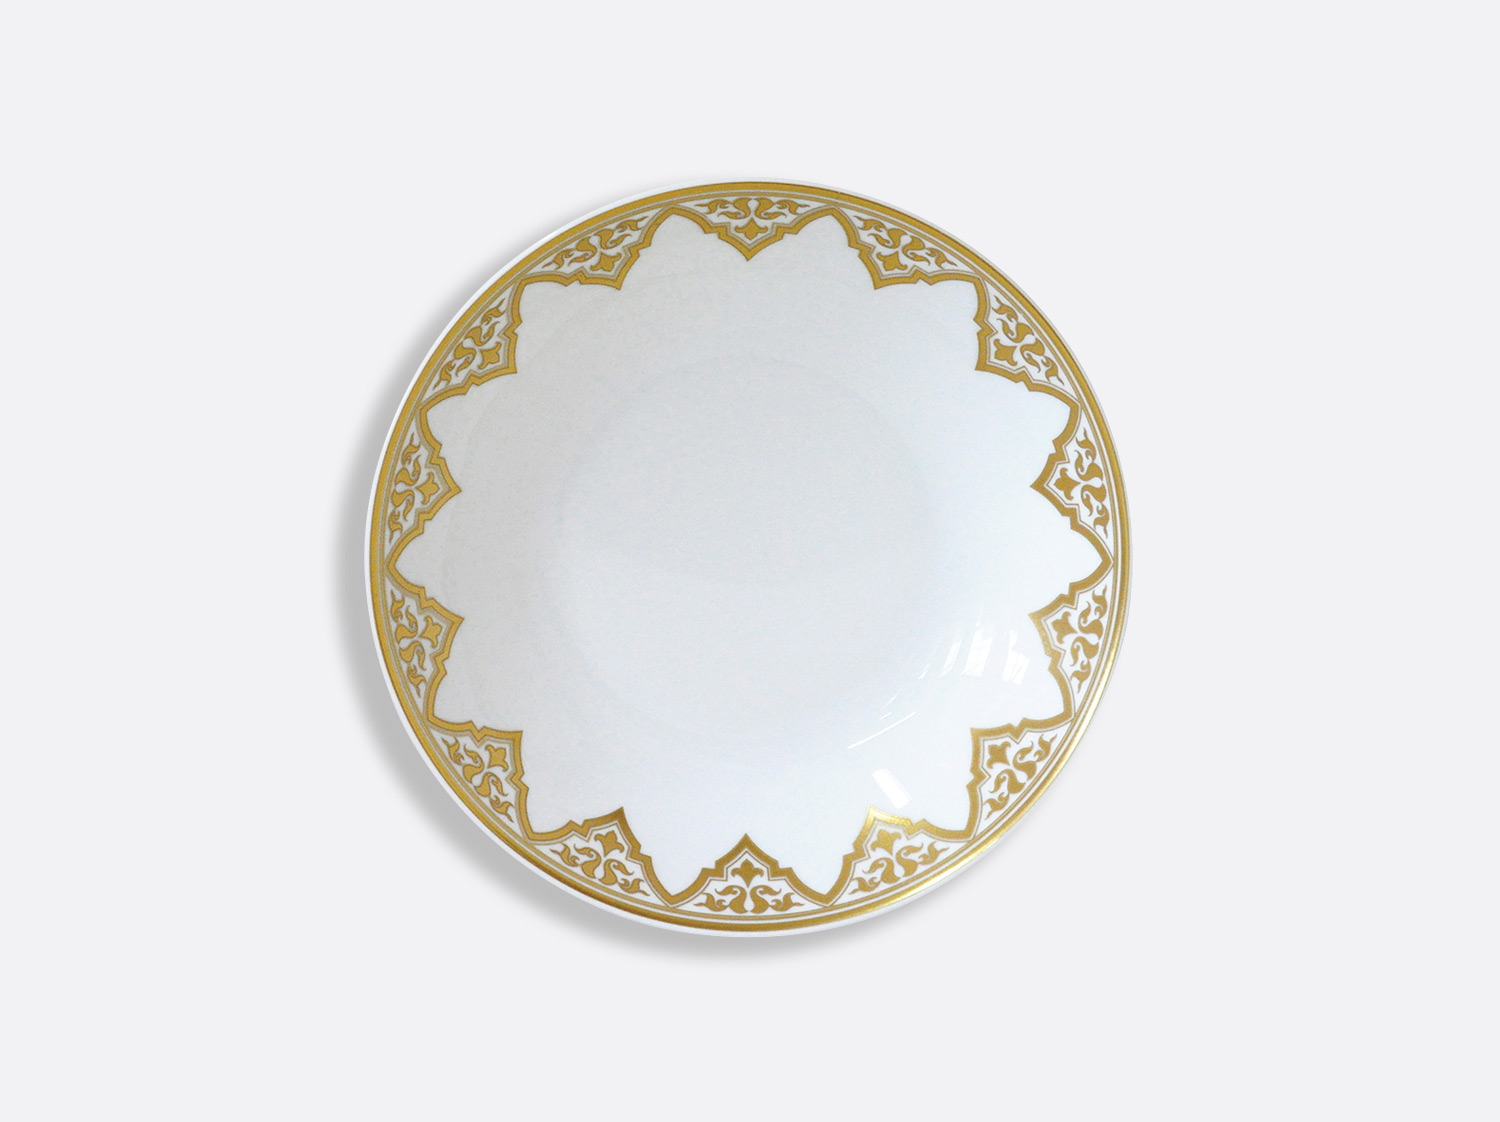 Assiette creuse calotte 19 cm en porcelaine de la collection Venise Bernardaud